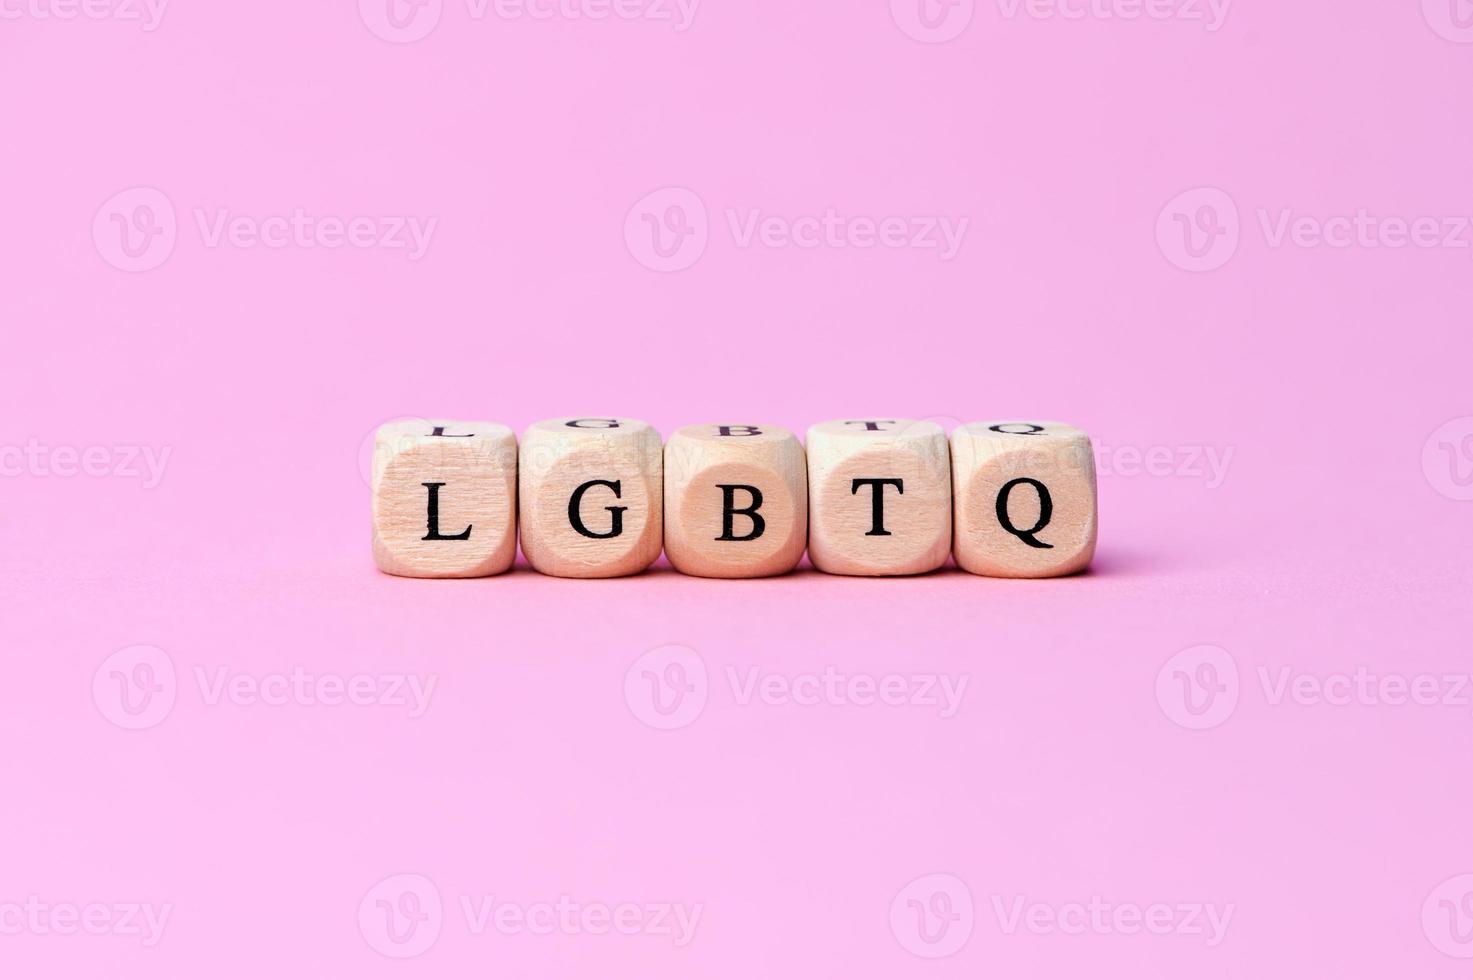 Holzwürfel mit den Großbuchstaben lgbtq, was die Abkürzung für Lesbian, Gay, Bisexual, Transgender und Queer ist foto